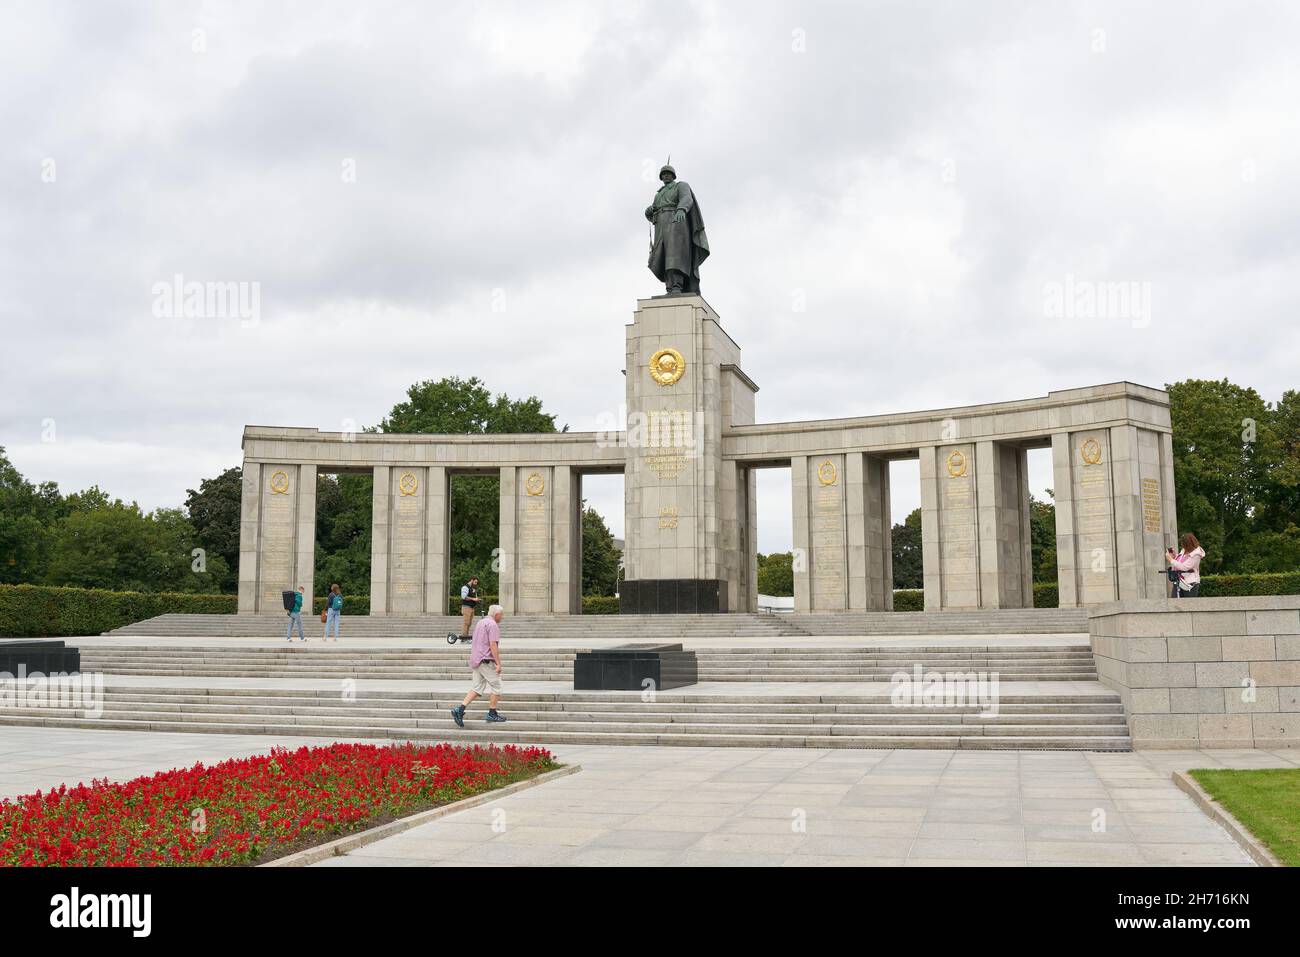 Sowjetisches Denkmal im Berliner Stadtteil Tiergarten. Das Denkmal wurde 1945 zu Ehren der Soldaten der Roten Armee errichtet. Stockfoto